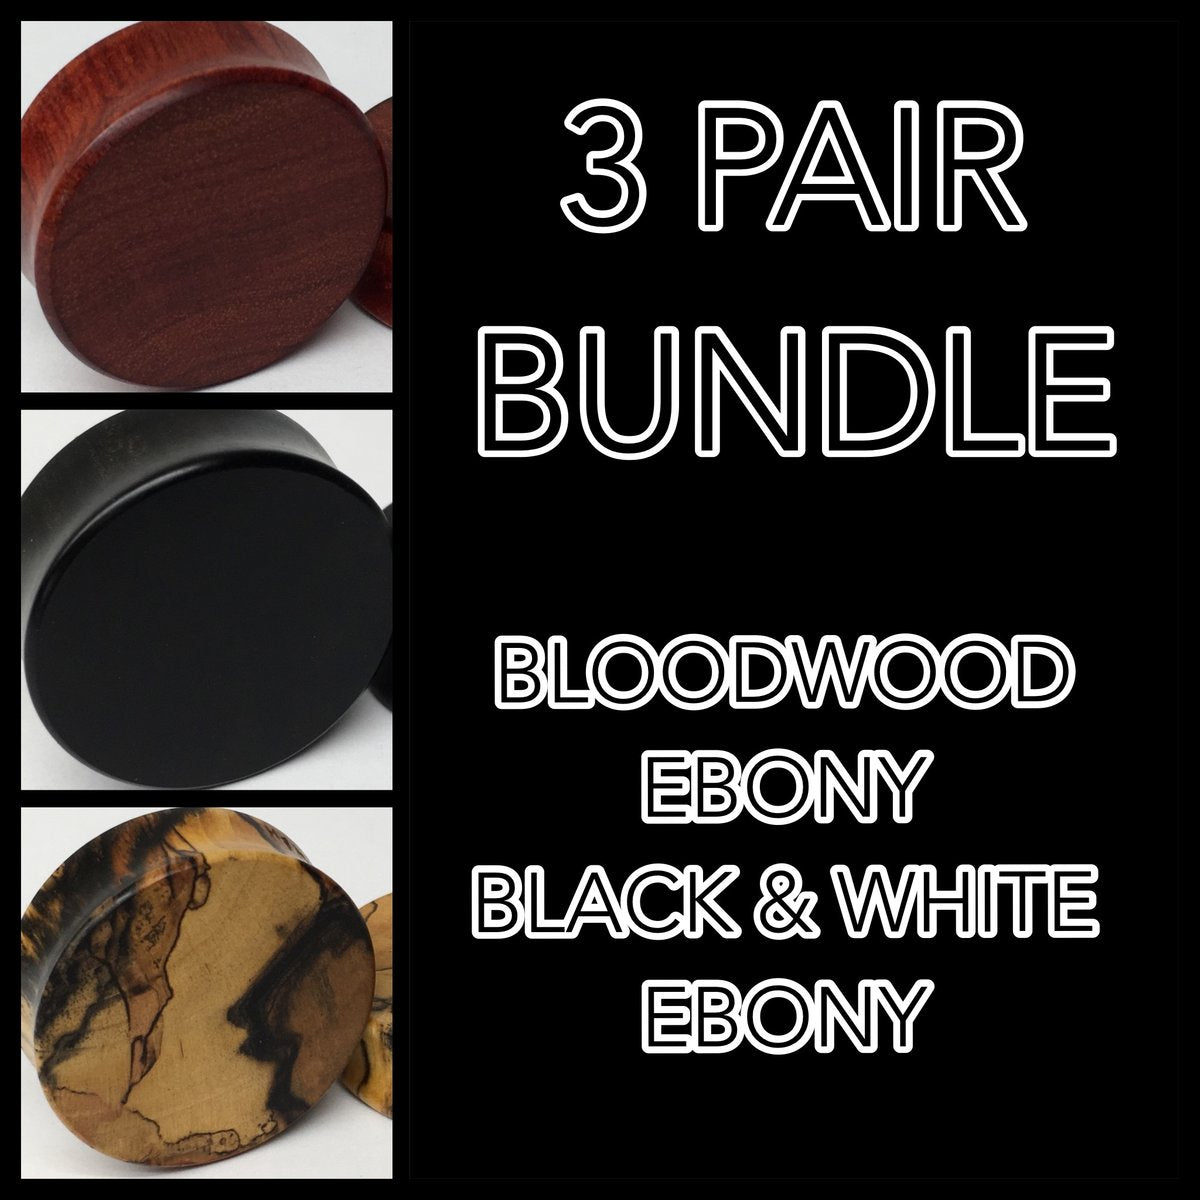 Ebony, Black & White Ebony, Bloodwood Bundle